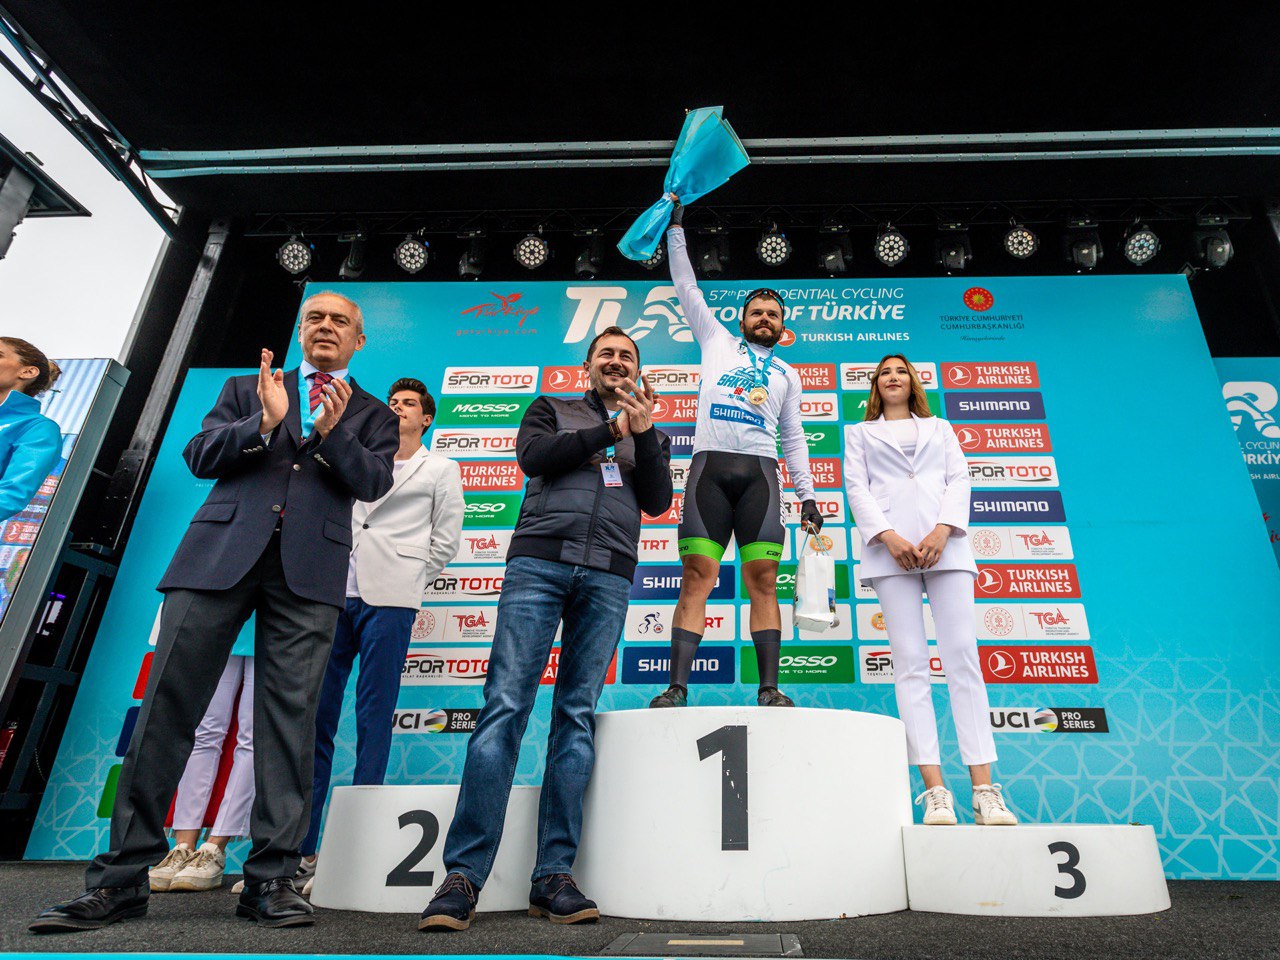 Tour of Türkiye'de Büyükşehirli Batuhan Türkiye Güzellikleri şampiyonu oldu